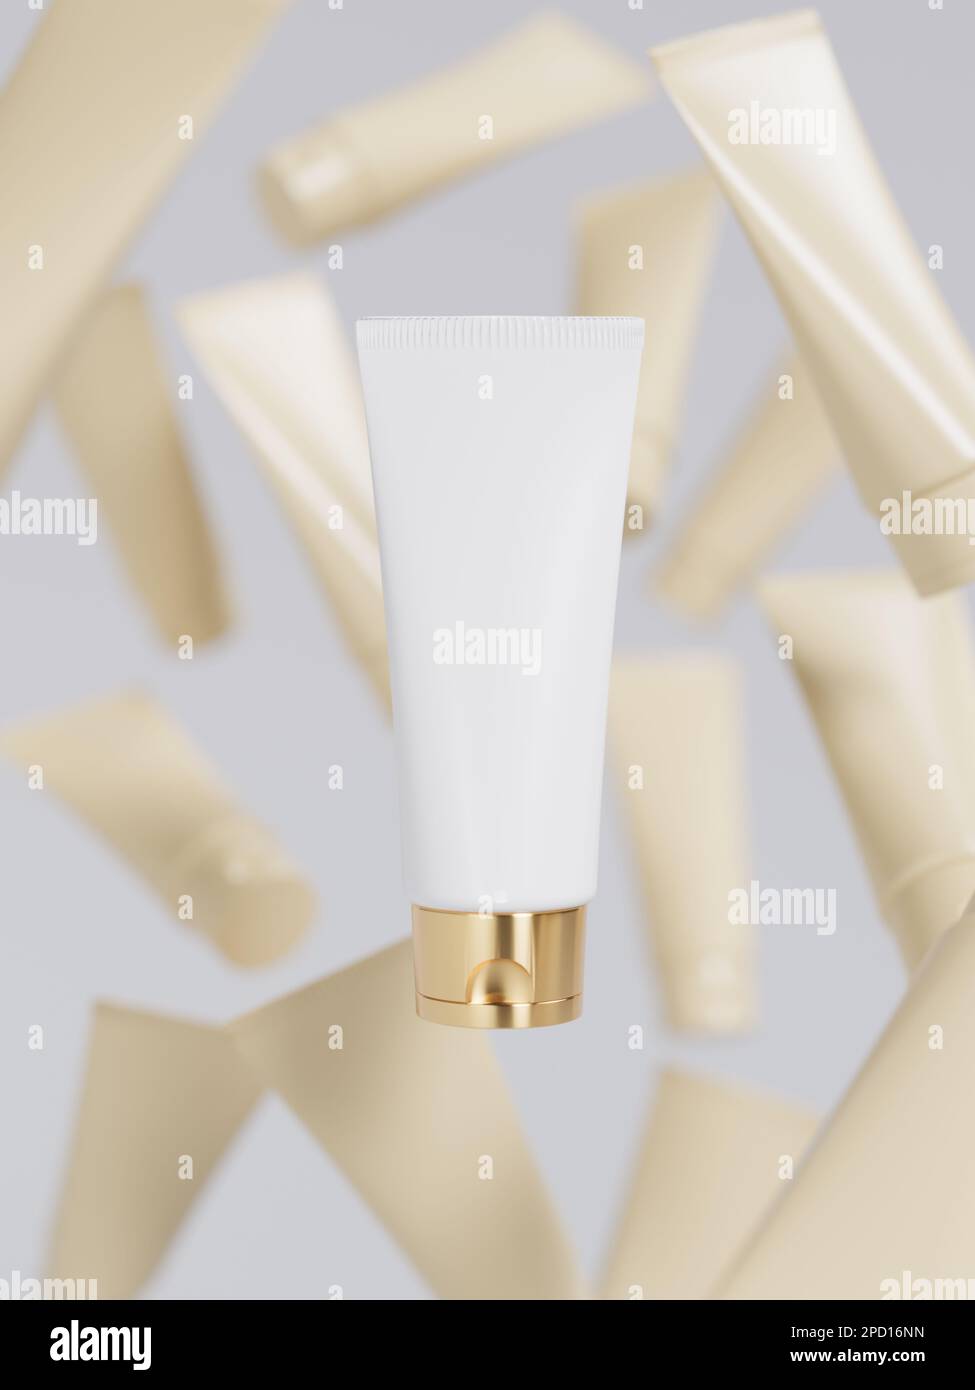 Kosmetische Creme Tube schwimmt auf abstrakten Unschärfe-Hintergrund, Beauty- und Pflegeprodukte-Präsentation Stockfoto